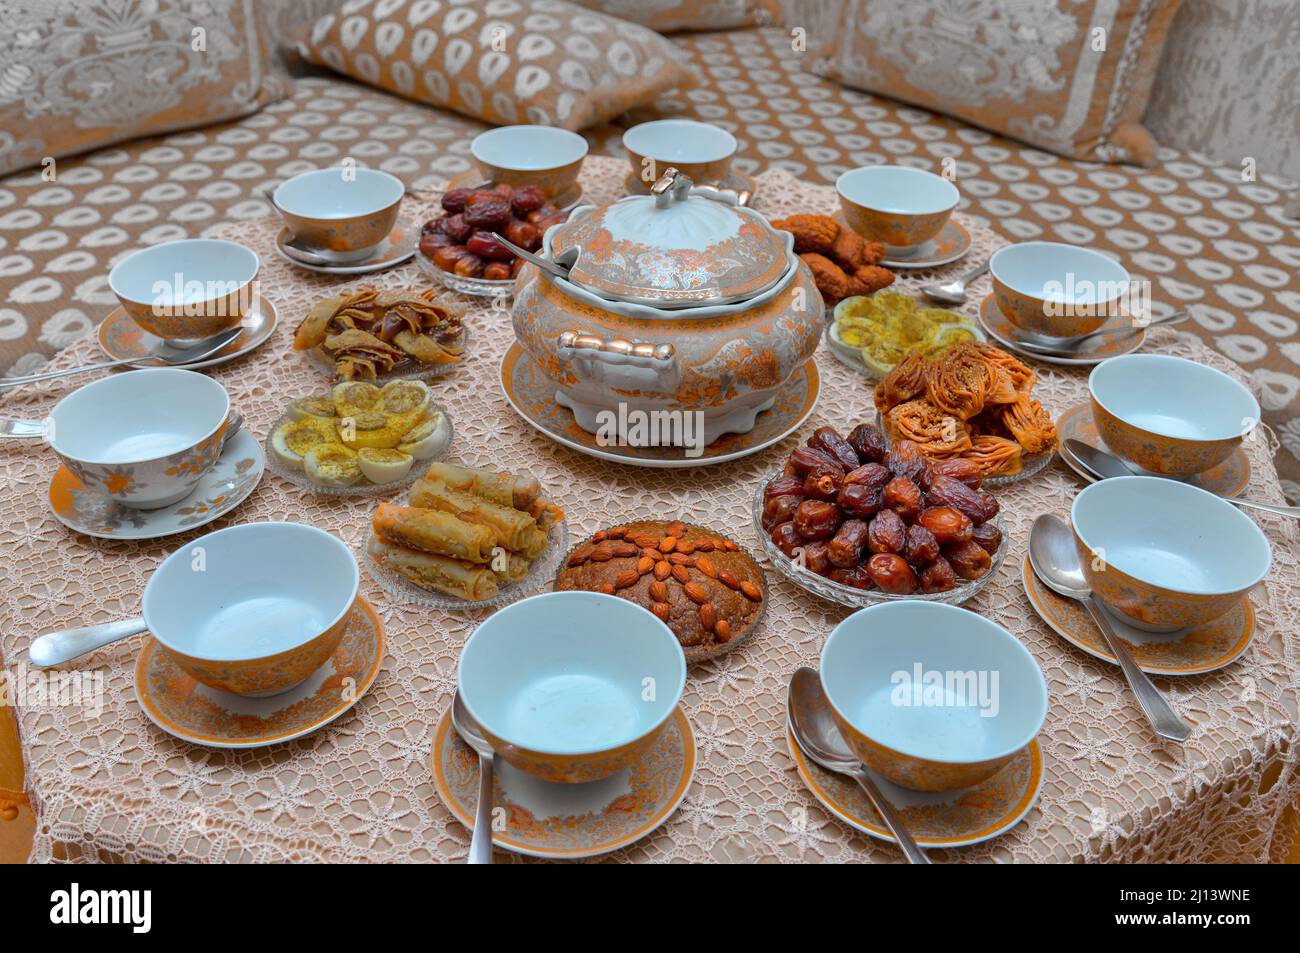 Tradicional comida casera Ramadán. Sopa de harira, dátiles, higos, dulces árabes, cerveza, Nueces, almendras, comida musulmana. Halal Foto de stock